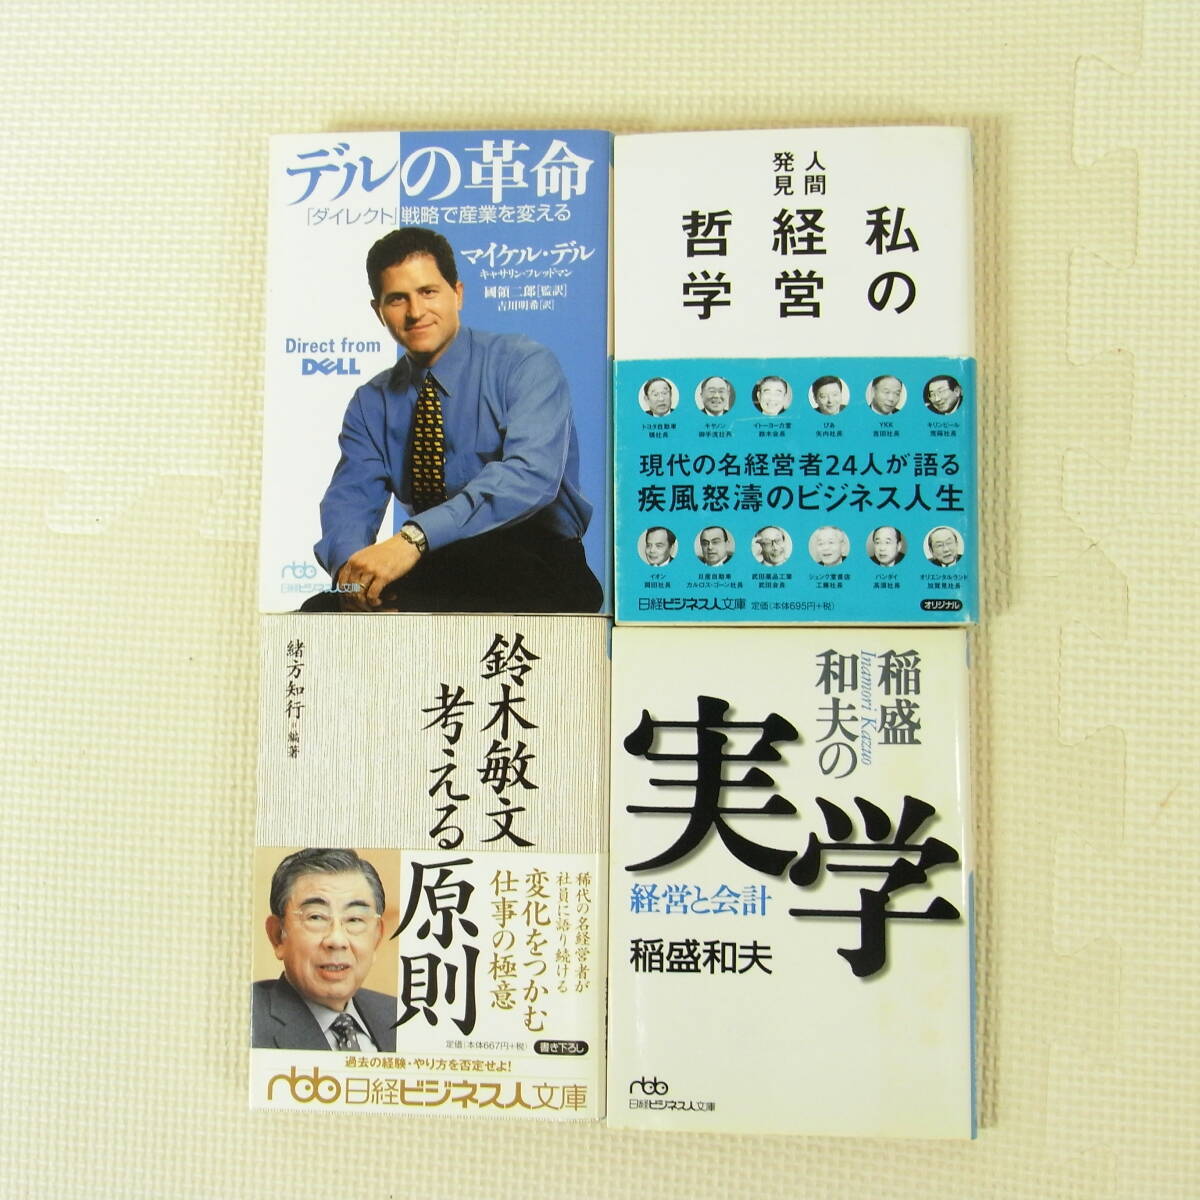  enterprise manager relation book@34 pcs. set Honda . one ... Kazuo .. regular Matsushita ...litsu* Karl ton DELLva- Gin IKEA Donald * playing cards 